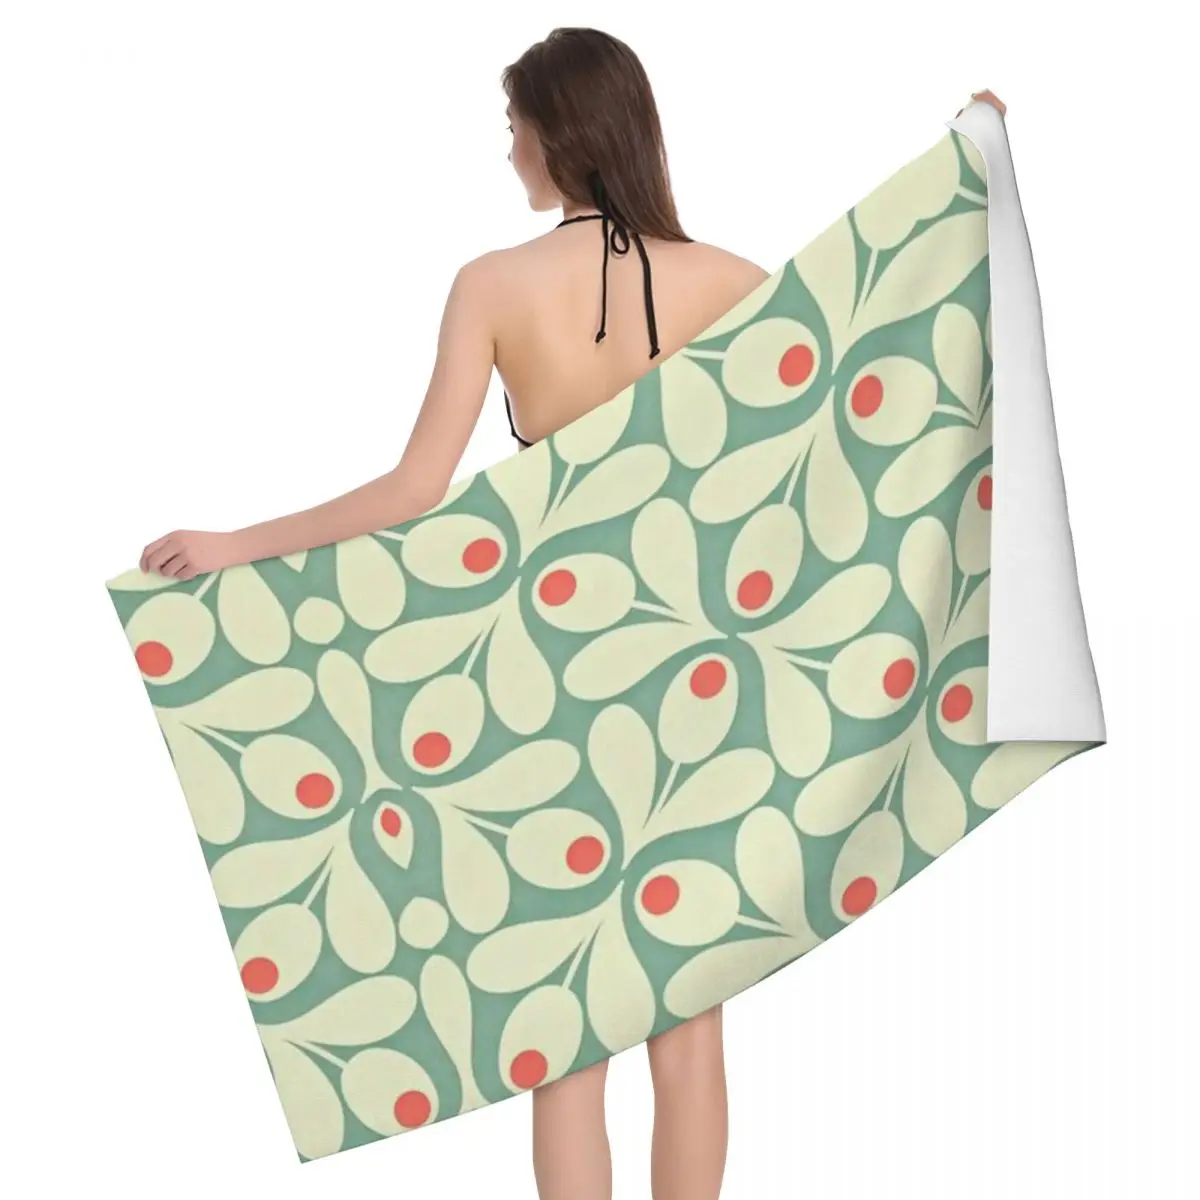 

Пляжное полотенце Orla Kiely с цветочным принтом, быстросохнущее абстрактное мягкое Льняное полотенце из микрофибры для сауны и бассейна